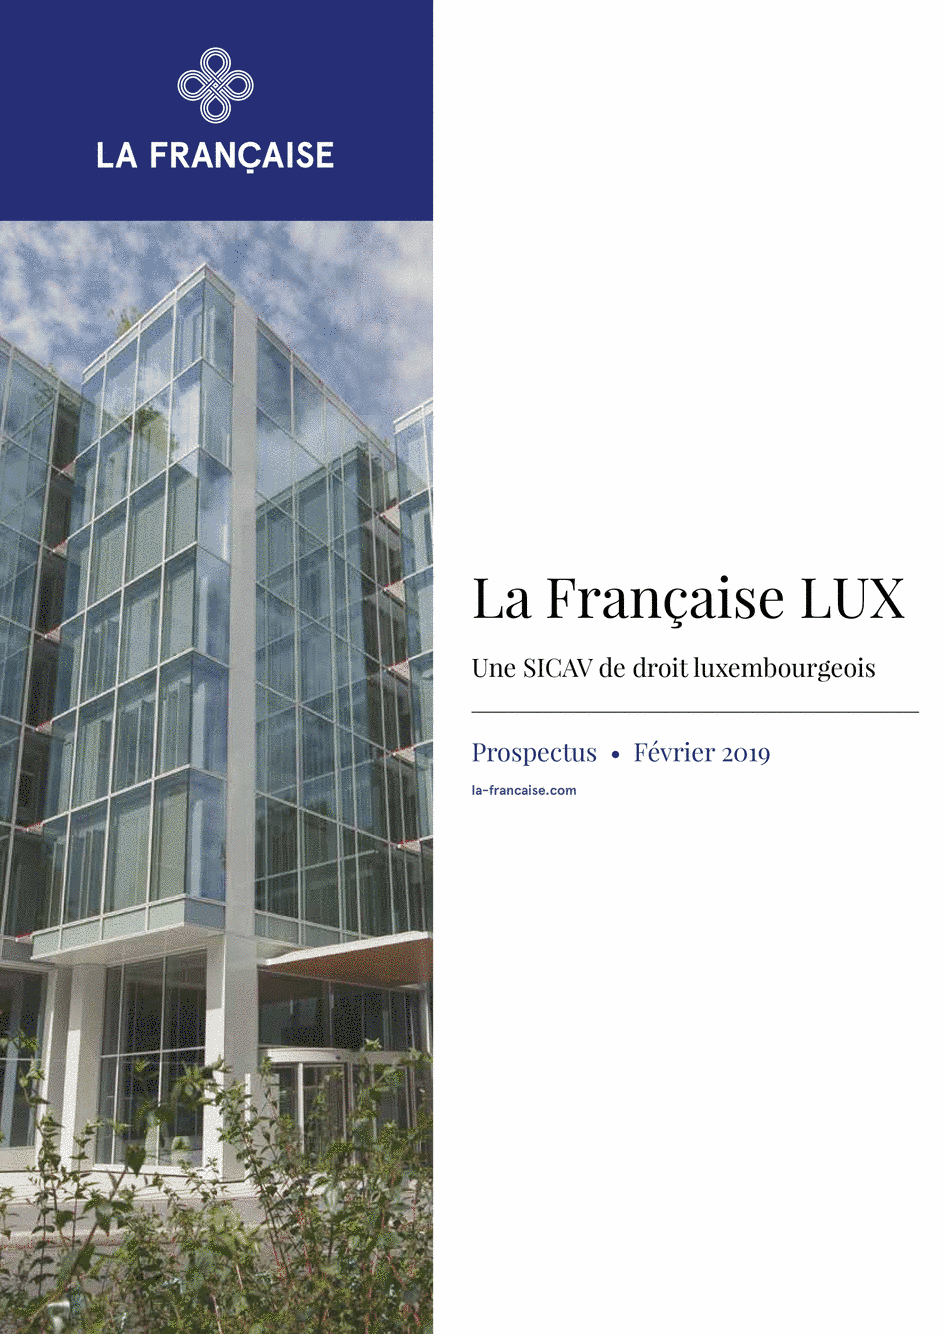 Prospectus La Française LUX - Inflection Point Carbon Impact Global - Class S EUR - 01/12/2018 - Français